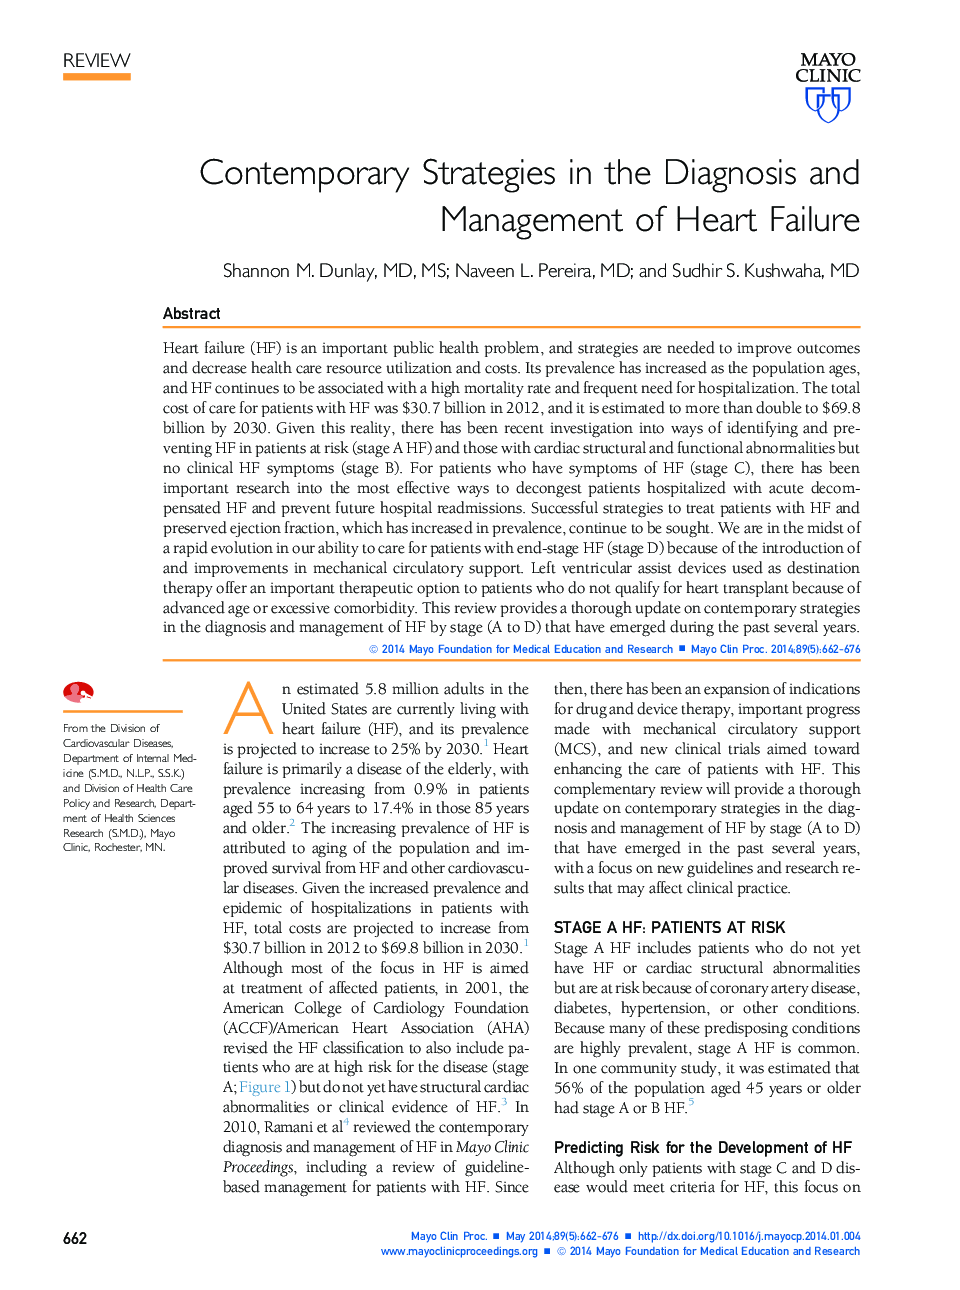 استراتژی های معاصر در تشخیص و مدیریت نارسایی قلب 